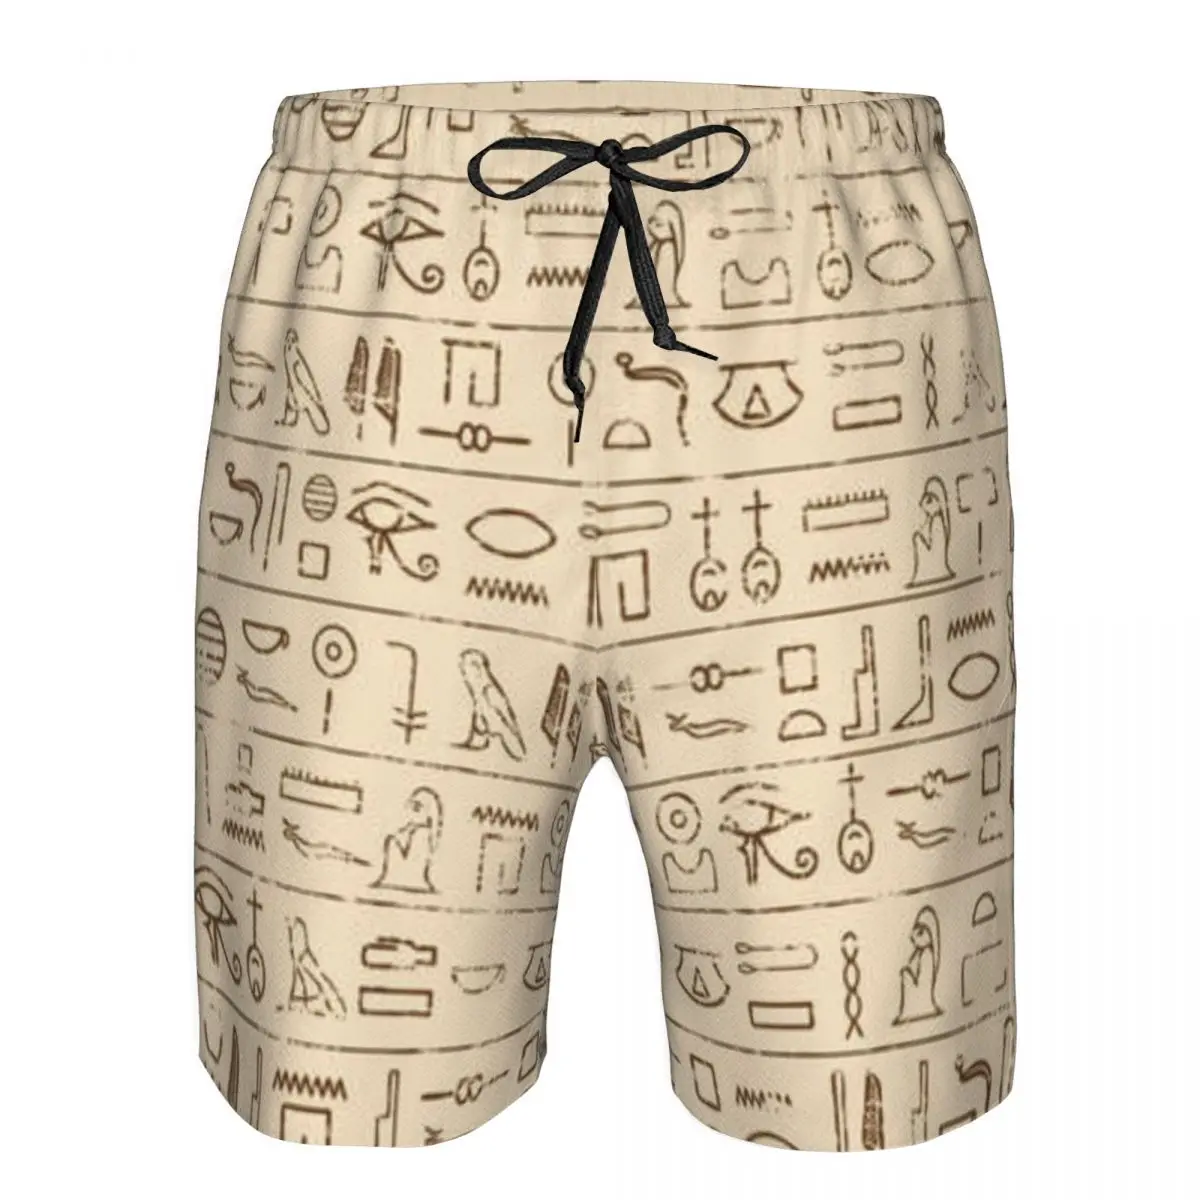 Мужские пляжные короткие шорты для плавания с египетскими иероглифами, спортивные шорты для серфинга, купальники